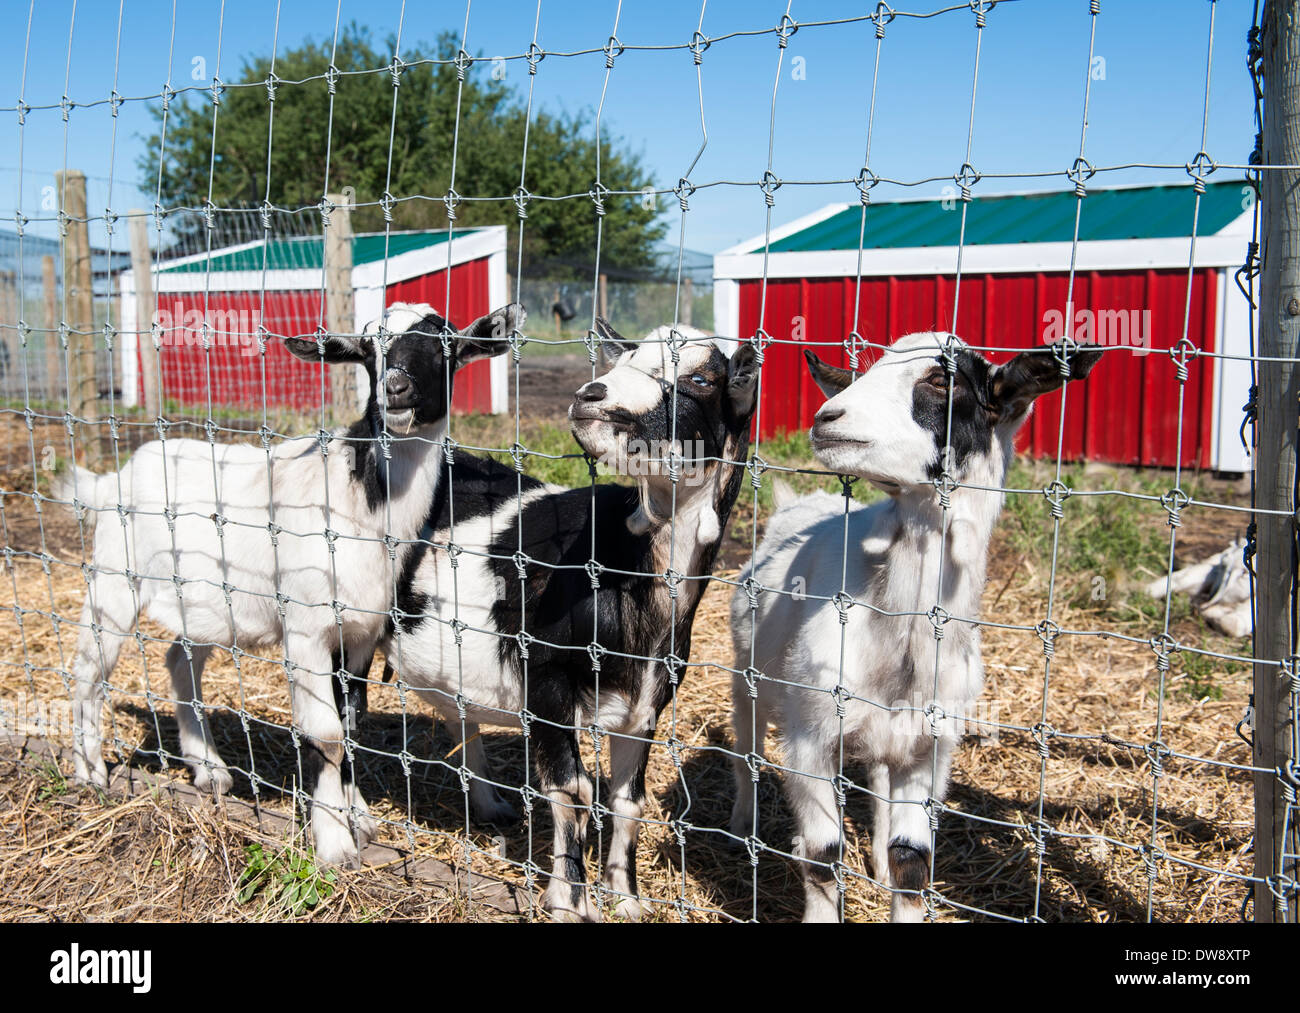 Tre caprini assieme al recinto nel cortile di una fattoria con stalle rosso Foto Stock